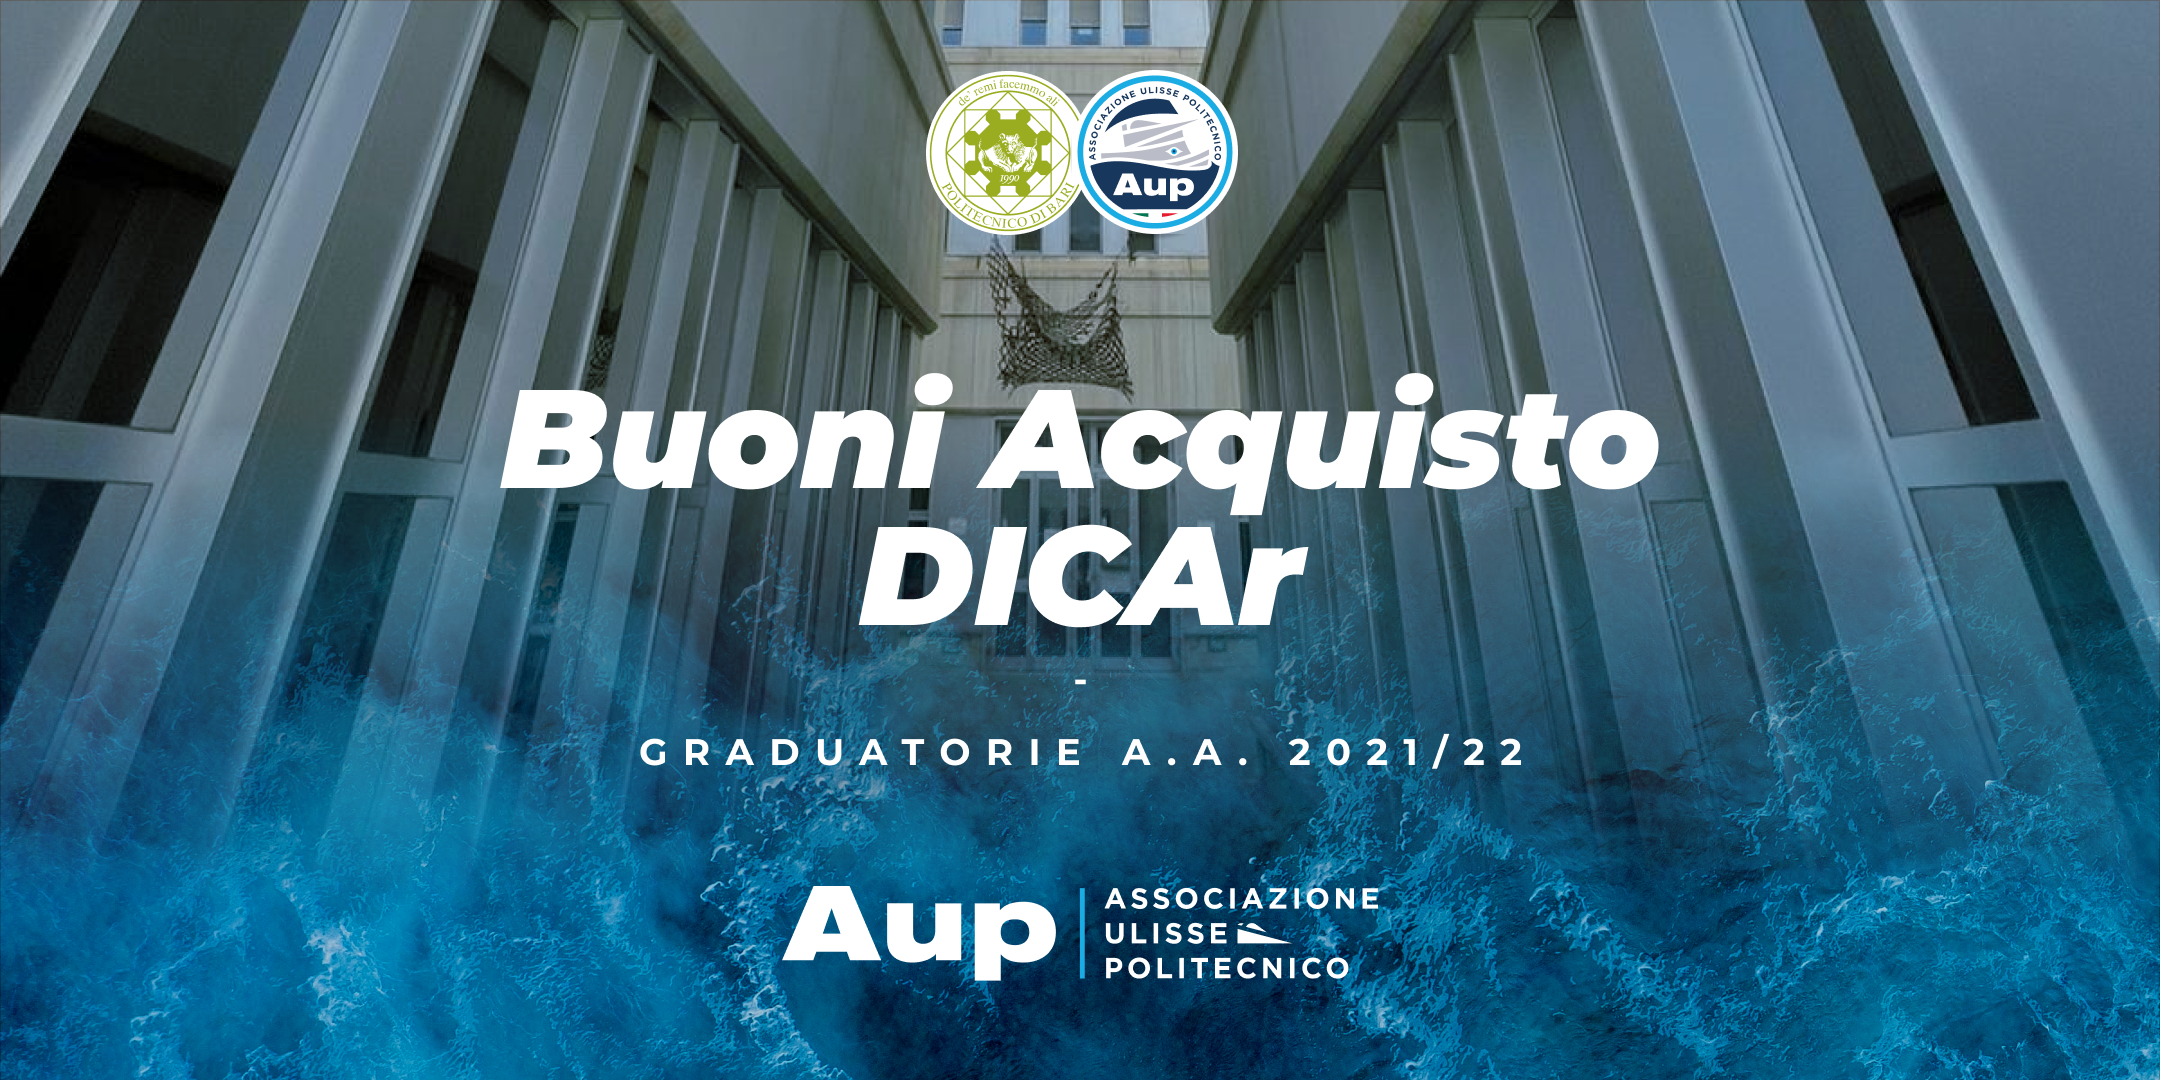 Voucher DICAr | Graduatorie a.a. 2021/22